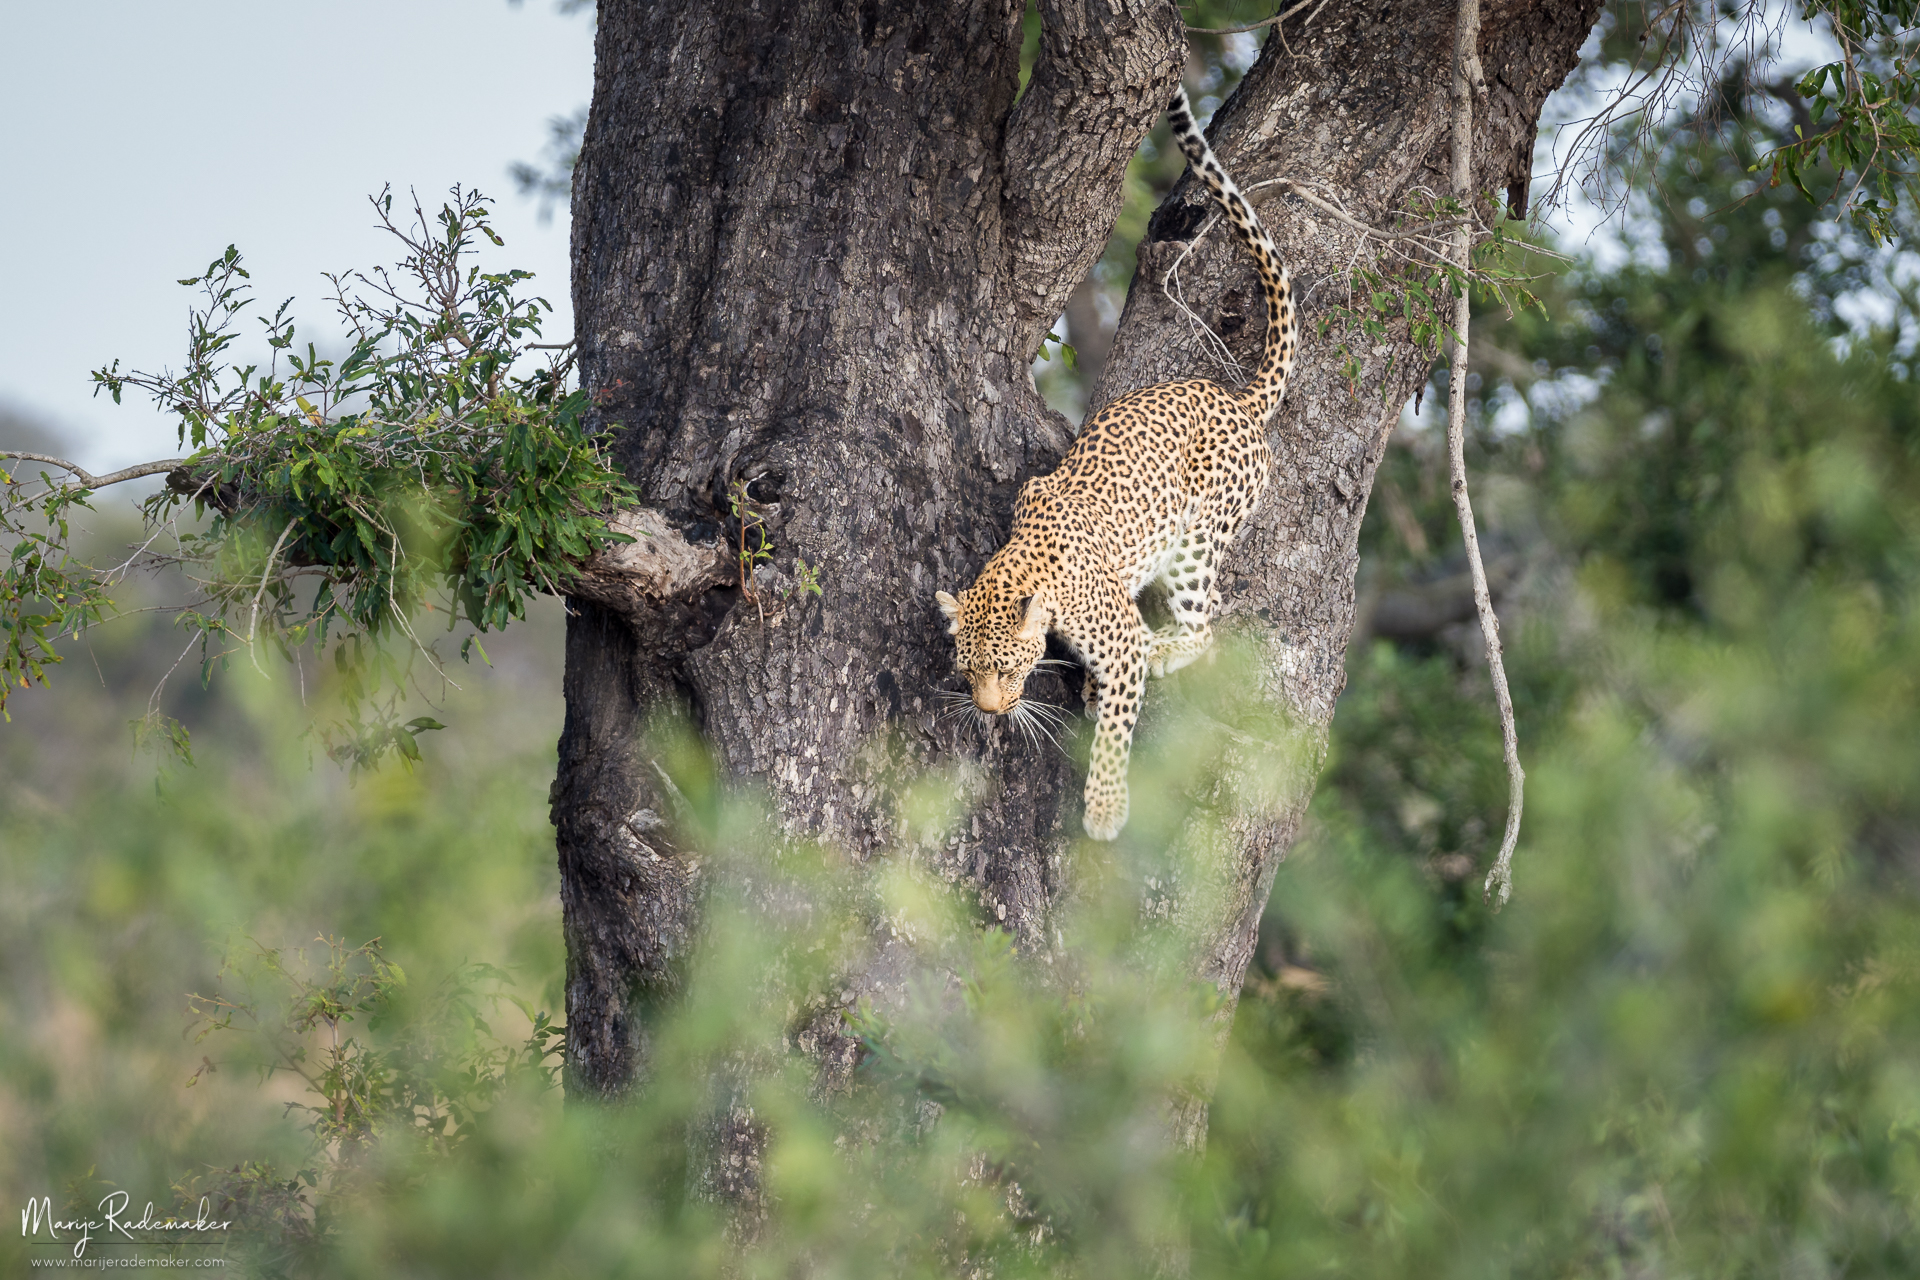 Captured at Kruger National Park on 11 Jun, 2018 by Marije Rademaker